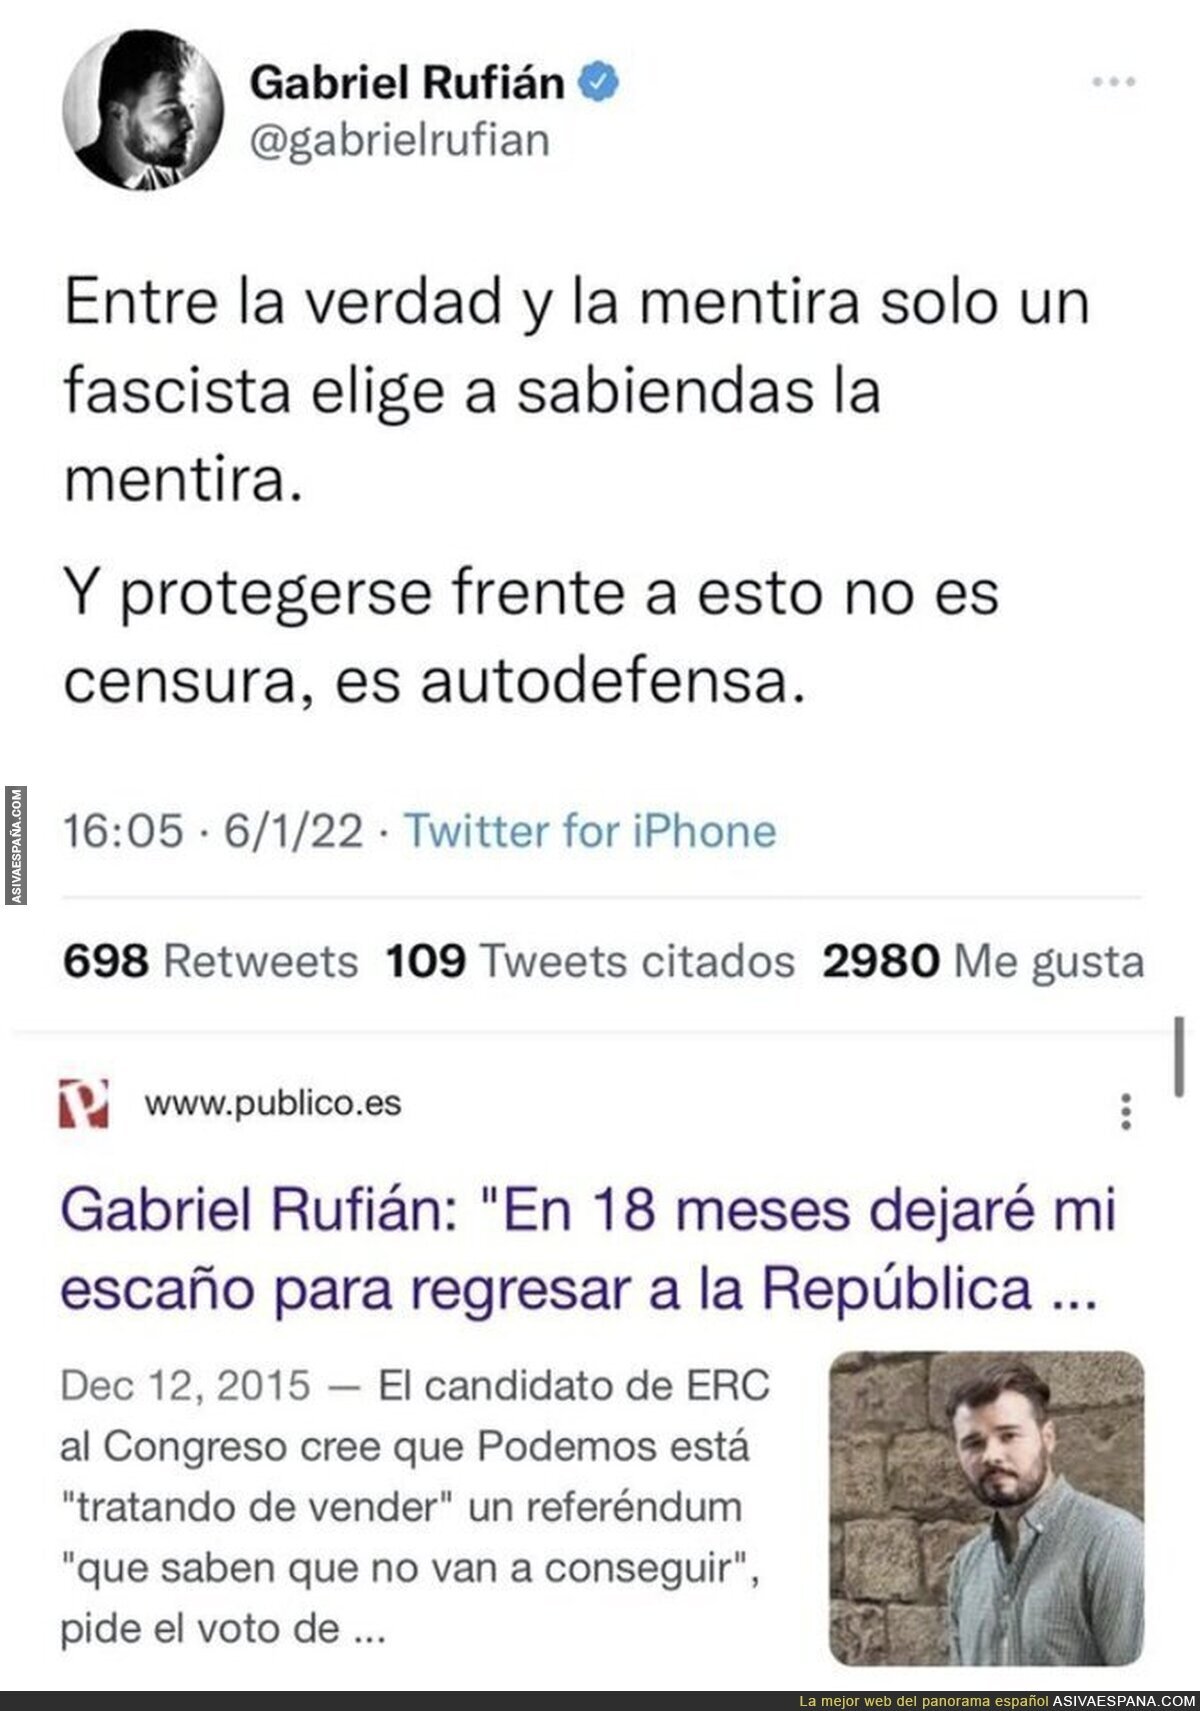 Así se retrata Gabriel Rufián bien solito